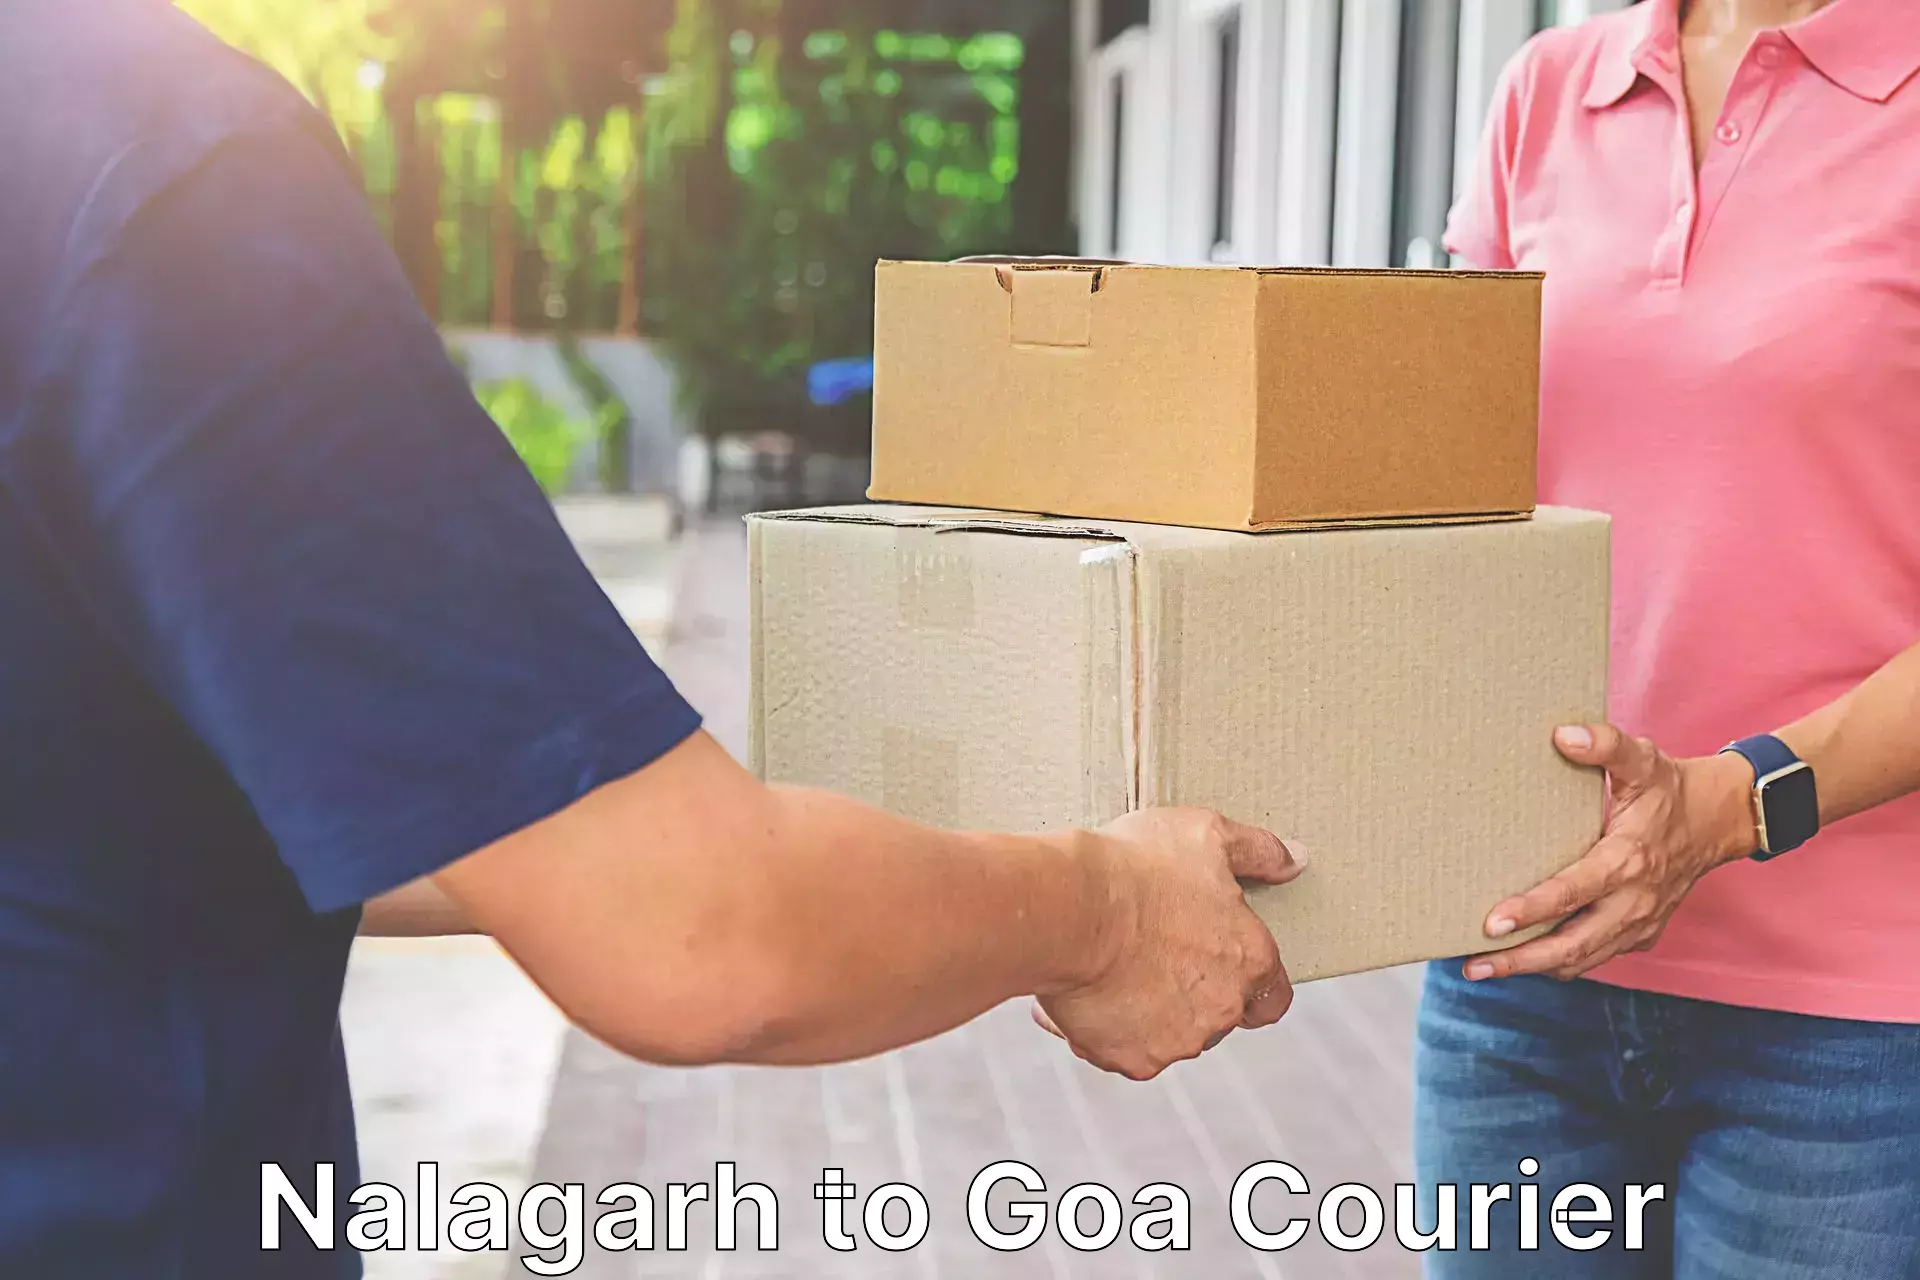 Express shipping Nalagarh to NIT Goa